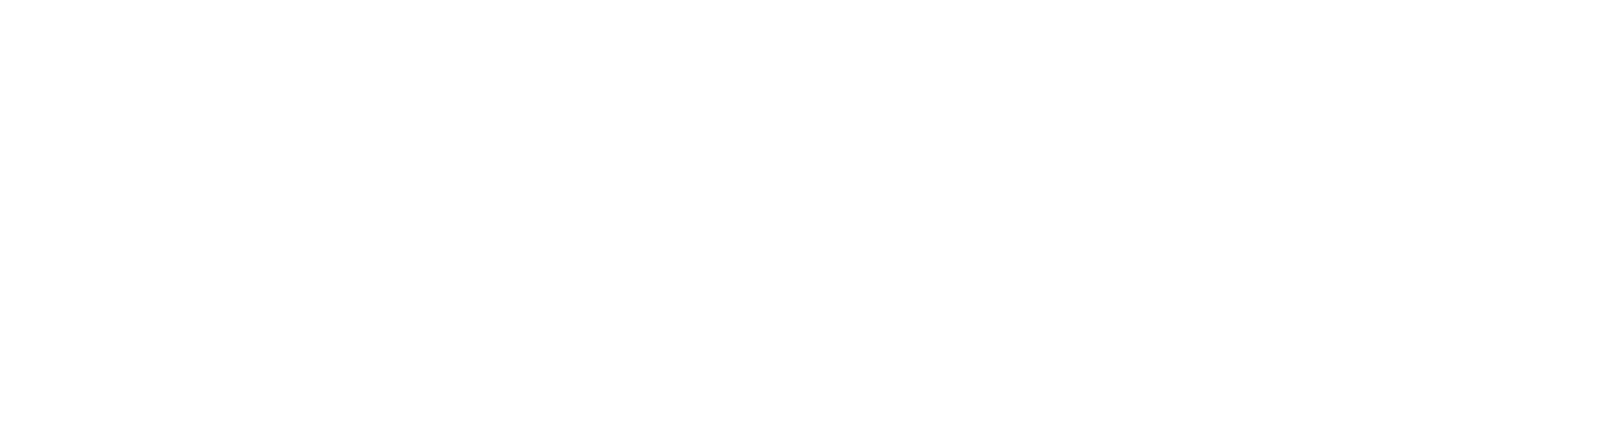 venmo-logo white